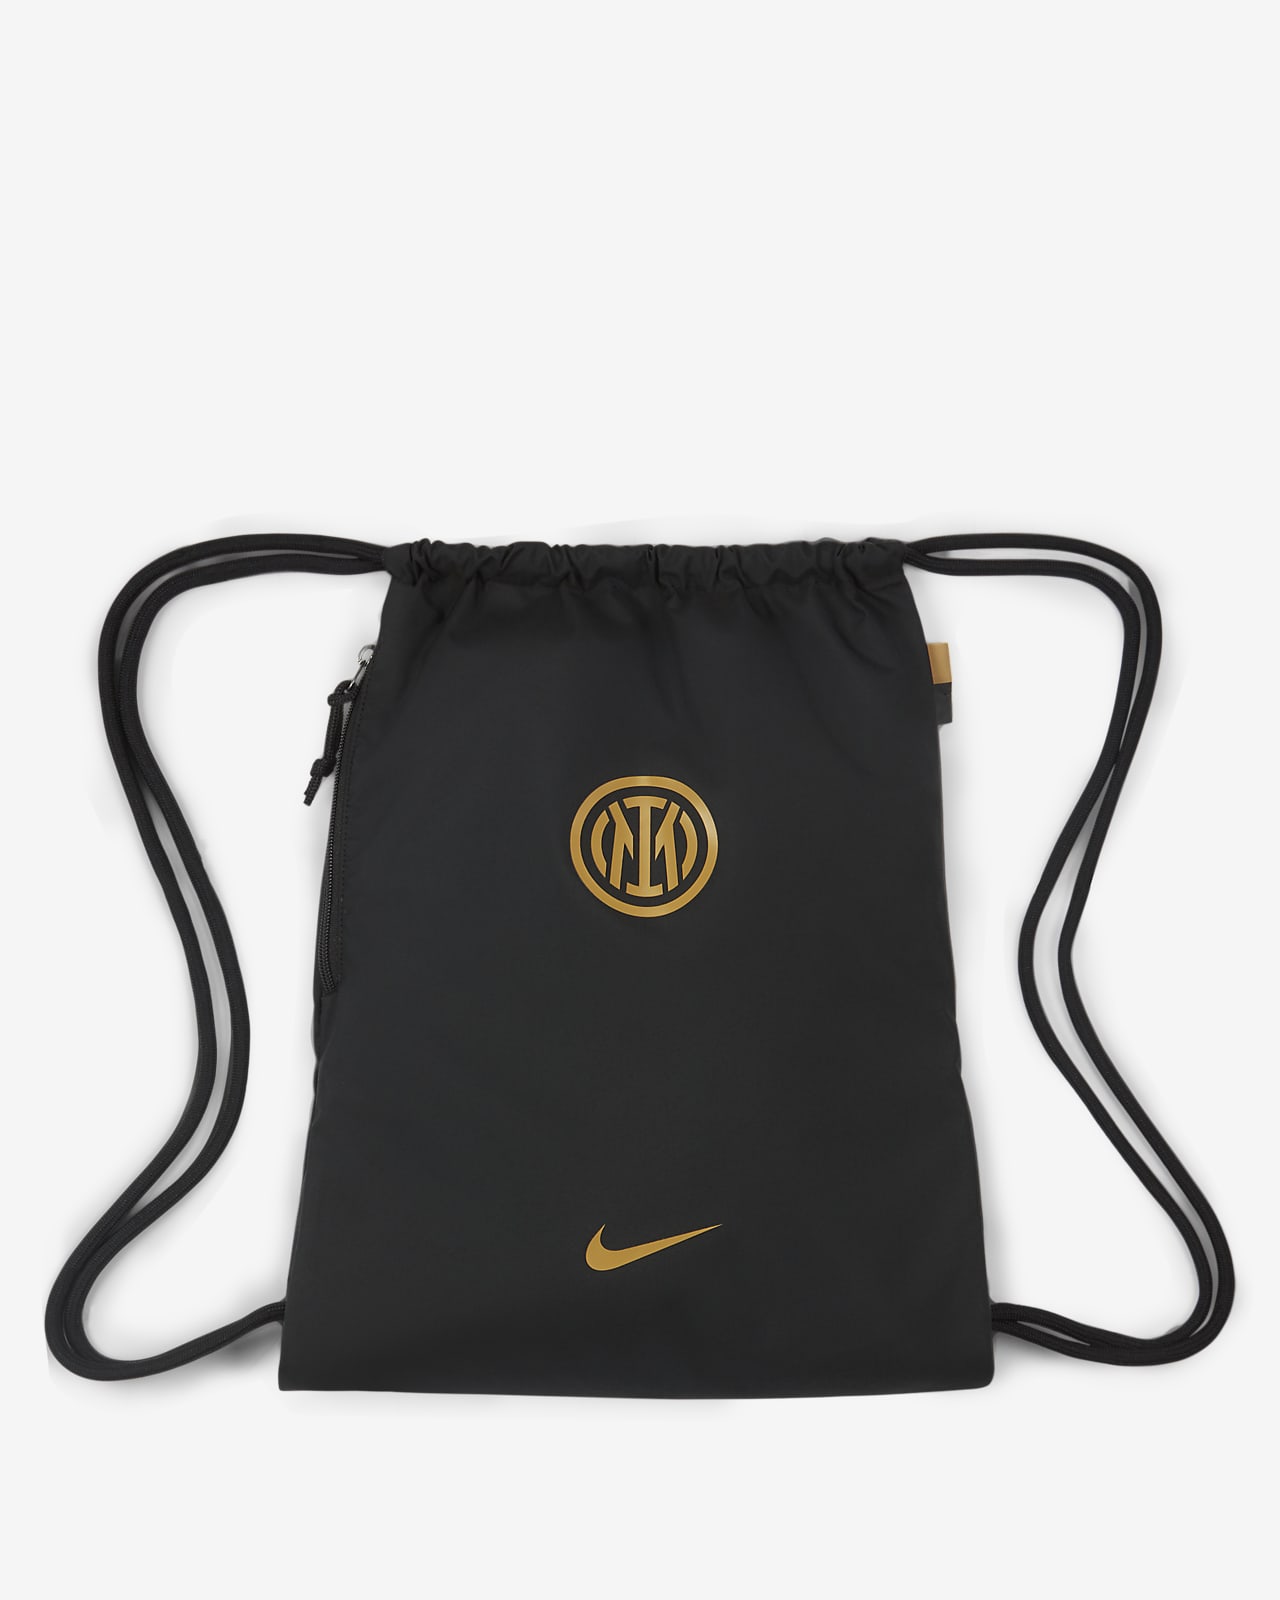 Inter Stadium-gymnastikpose til fodbold (13 l). Nike DK